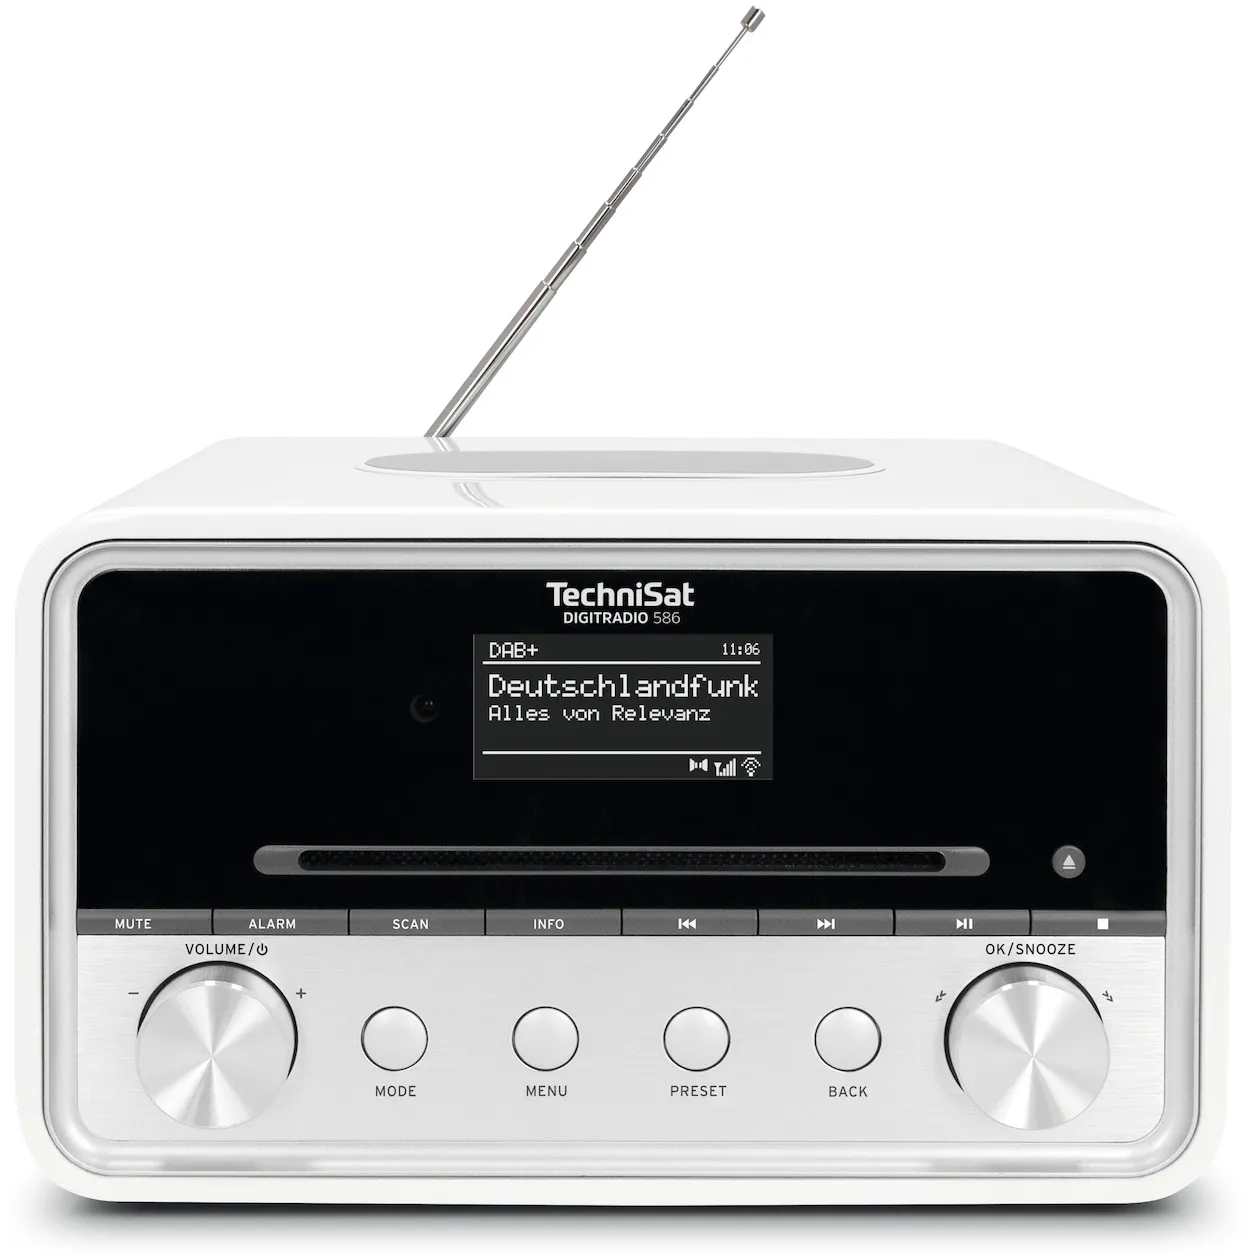 TechniSat Digitradio 586 Wit/zilver